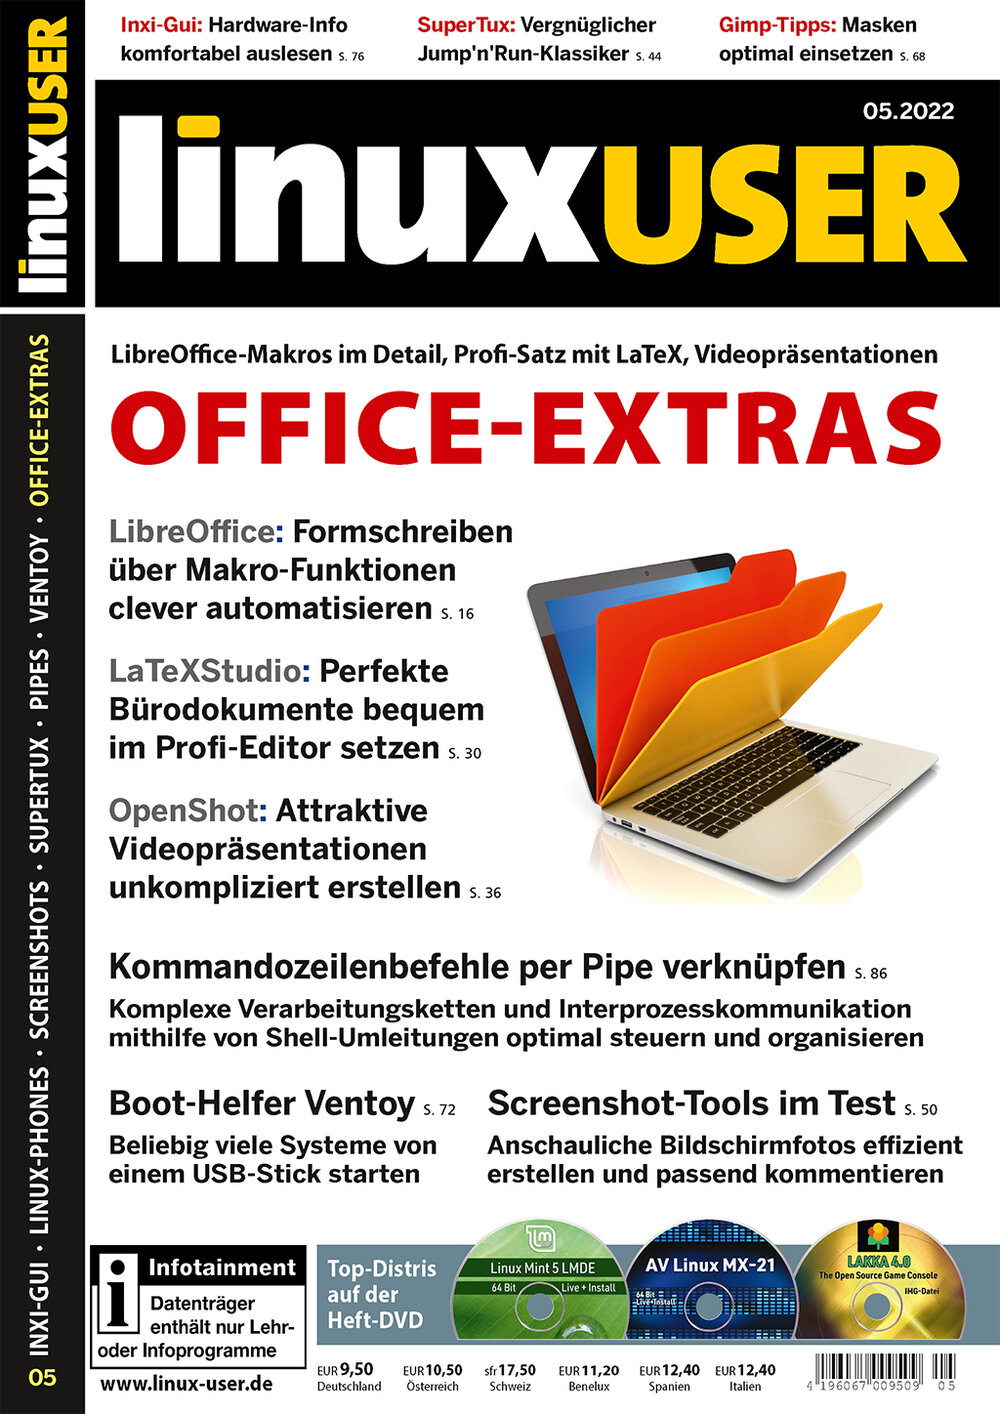 LinuxUser DVD 05/2022